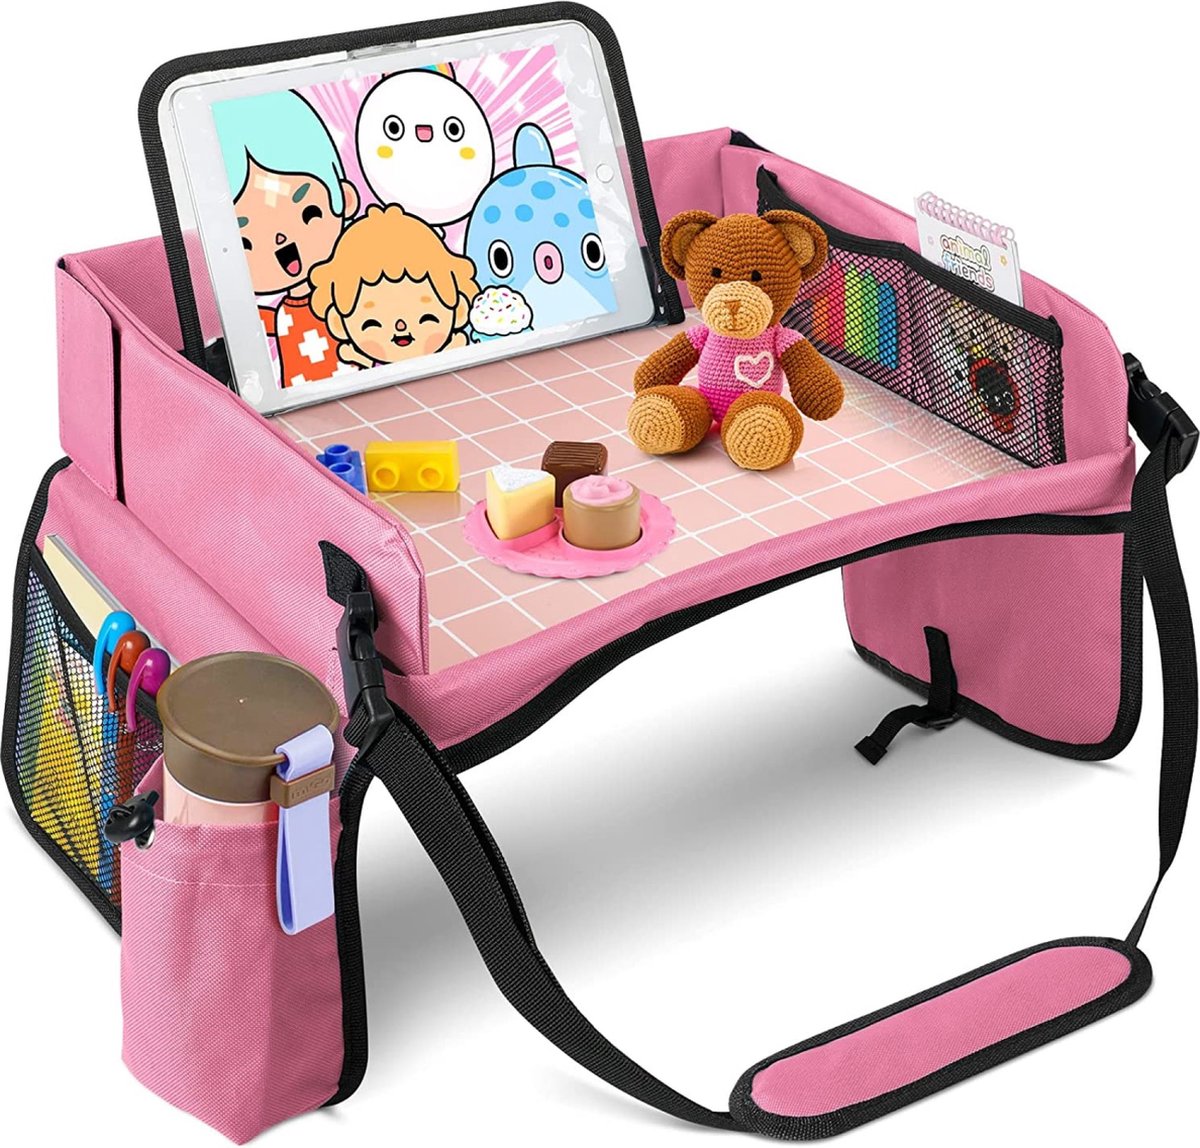 Premium Reistafel Voor Auto met Tekentafel & Tablethouder - Autostoel Organizer -Speeltafel - Whiteboard - Roze - Merkloos